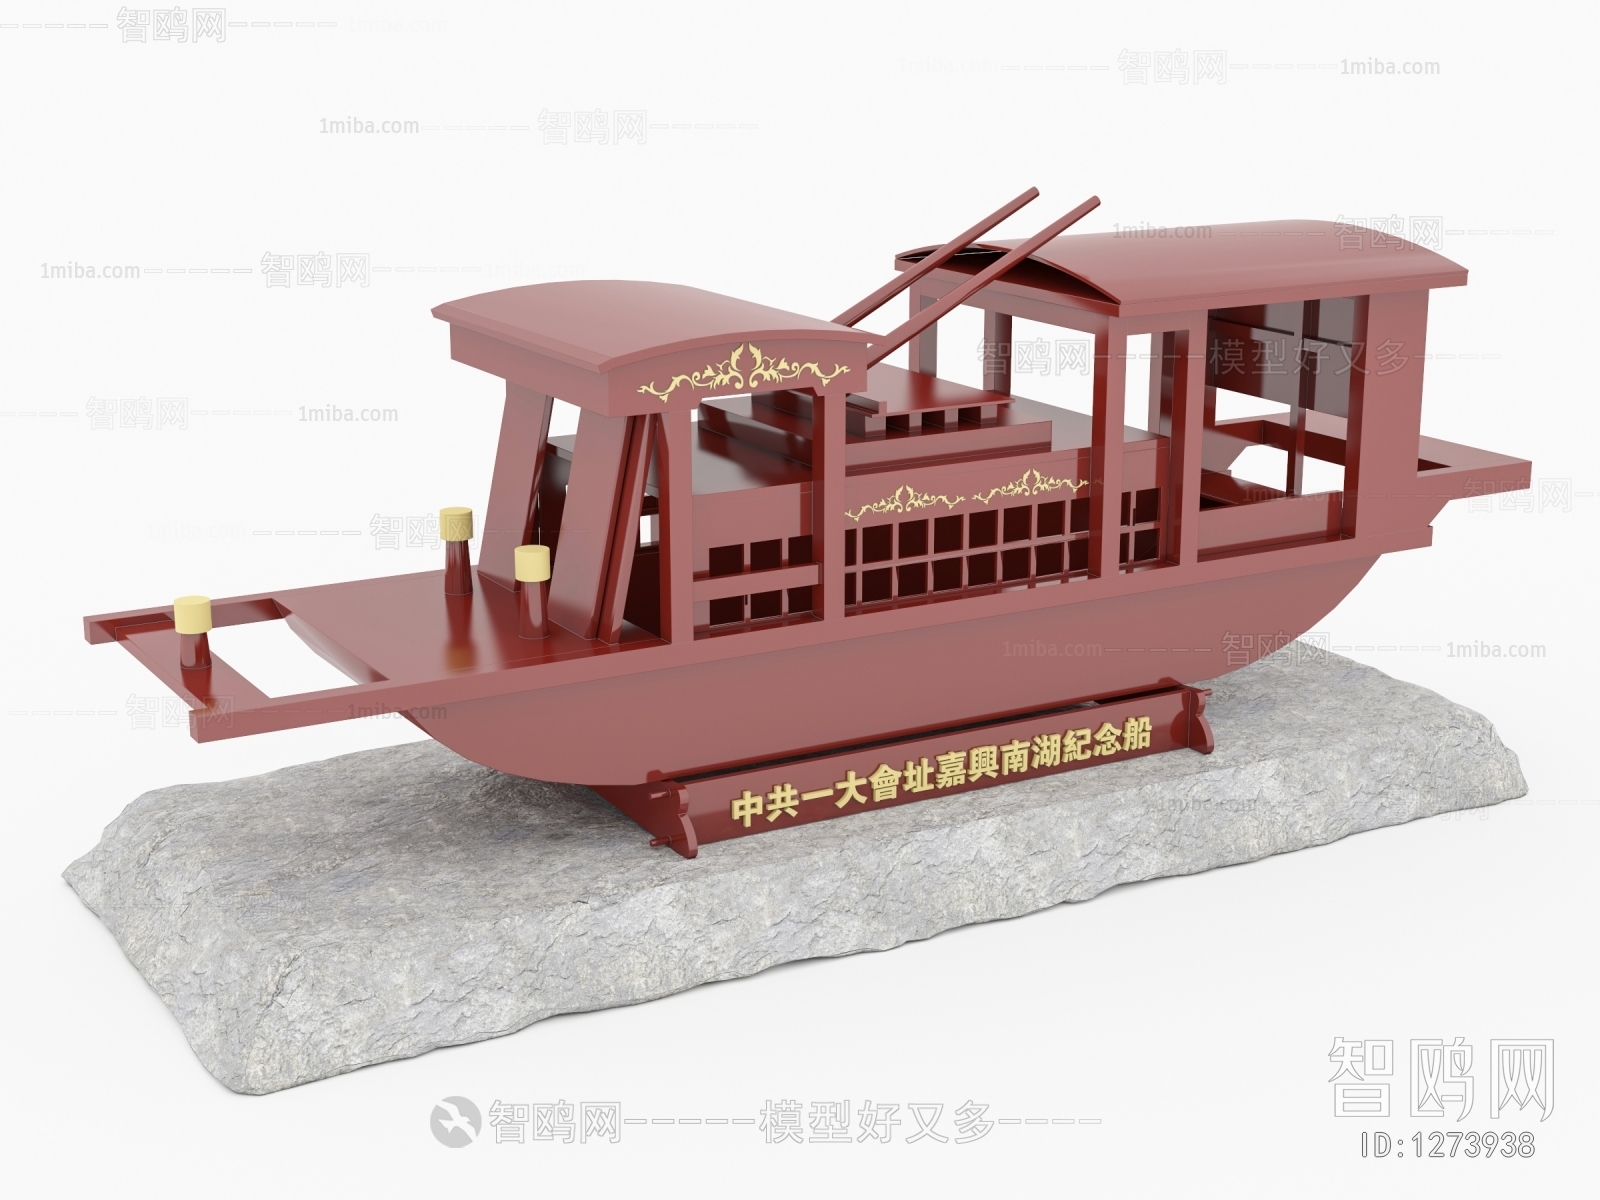 中式红船党建雕塑